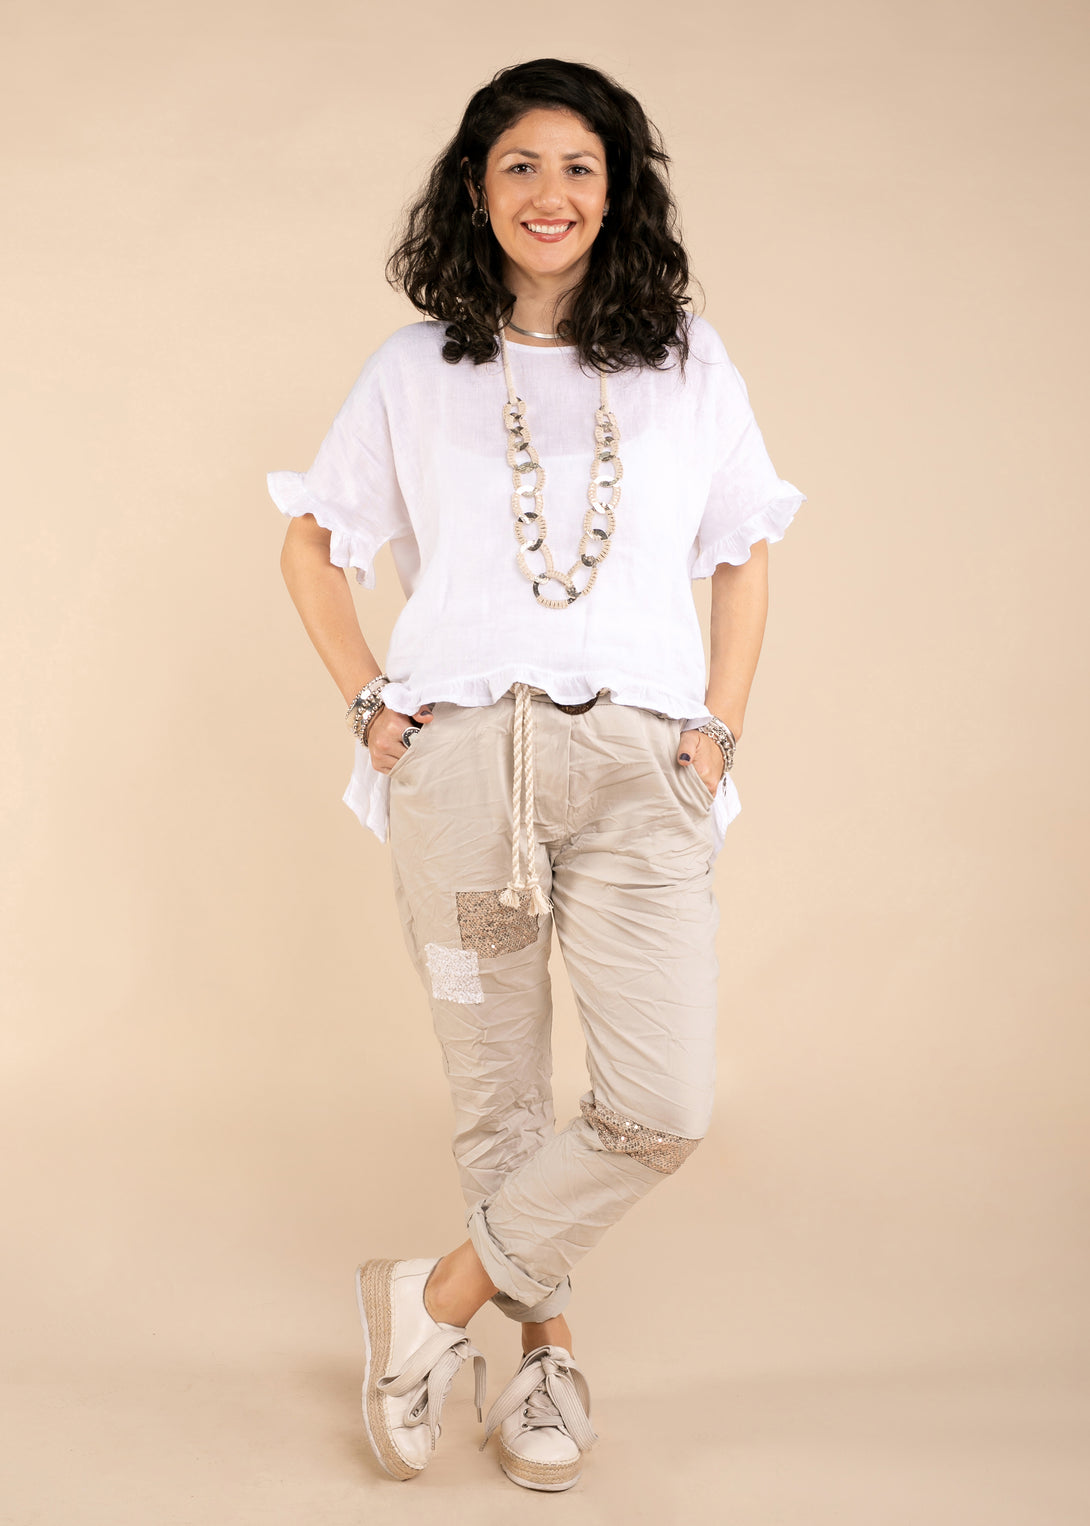 Chiara Linen Top in White - Imagine Fashion